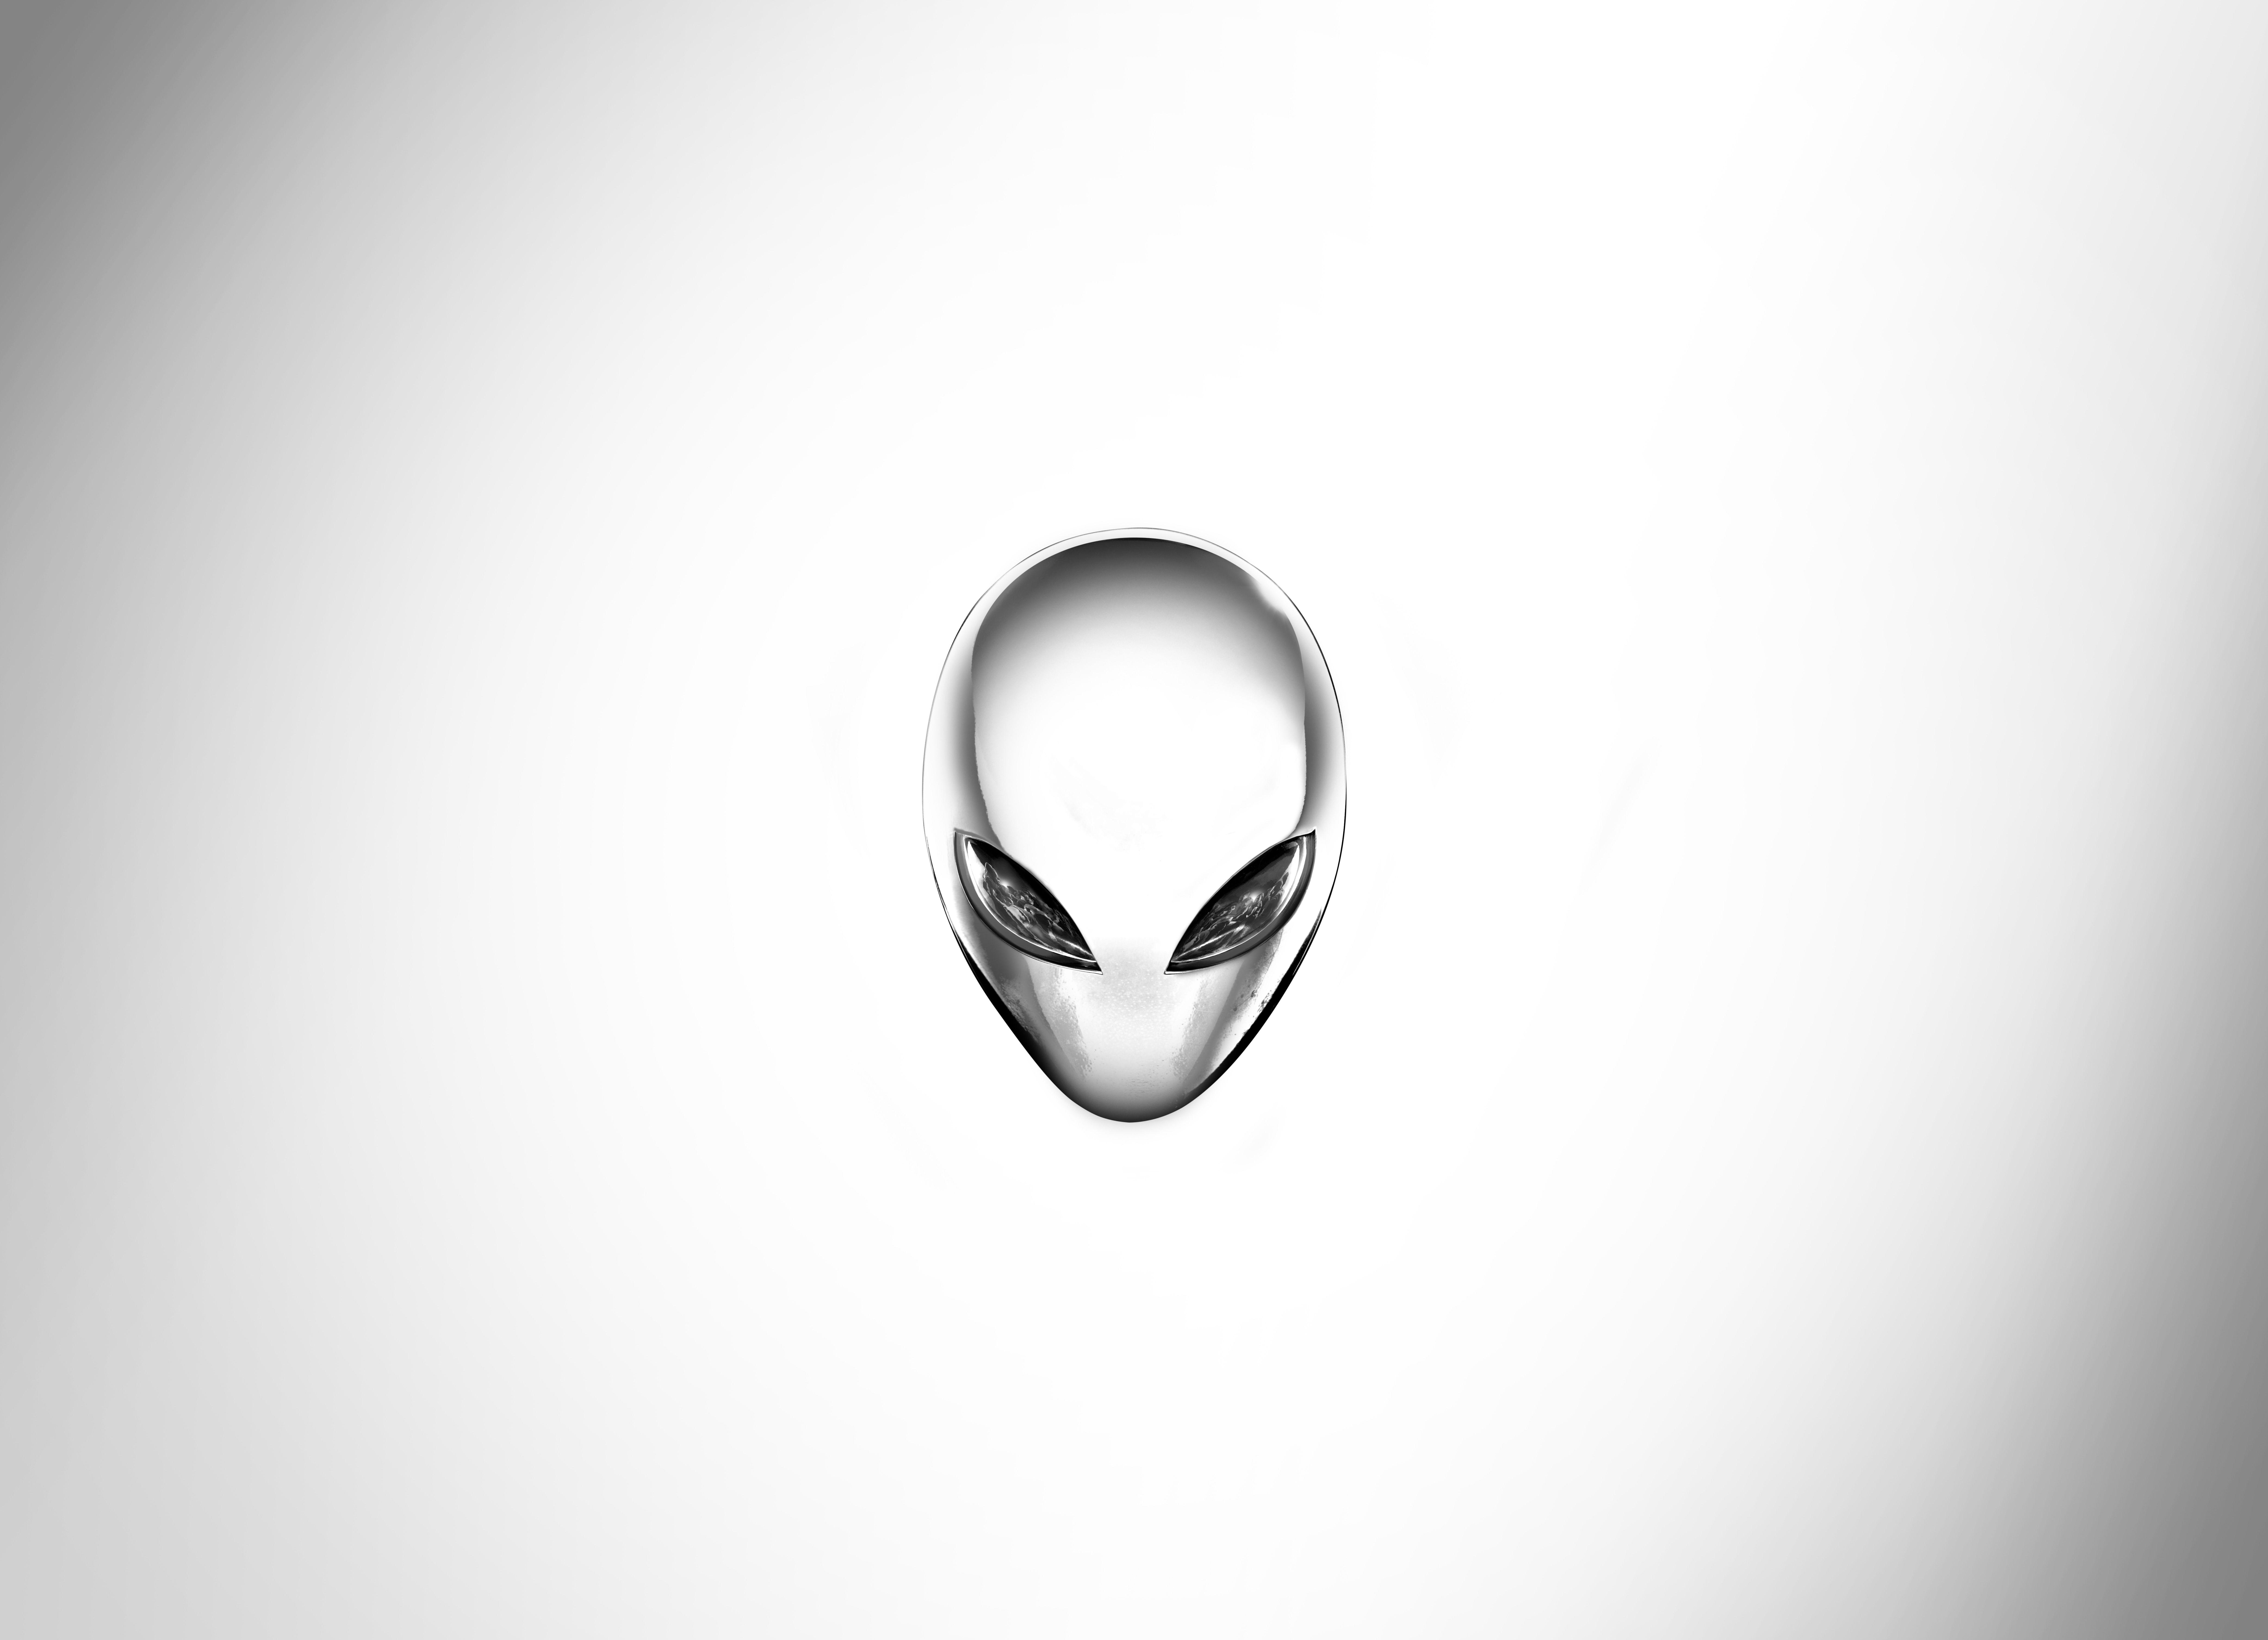 Alienware Wallpaper by wassupdoc by wassupdoc on DeviantArt